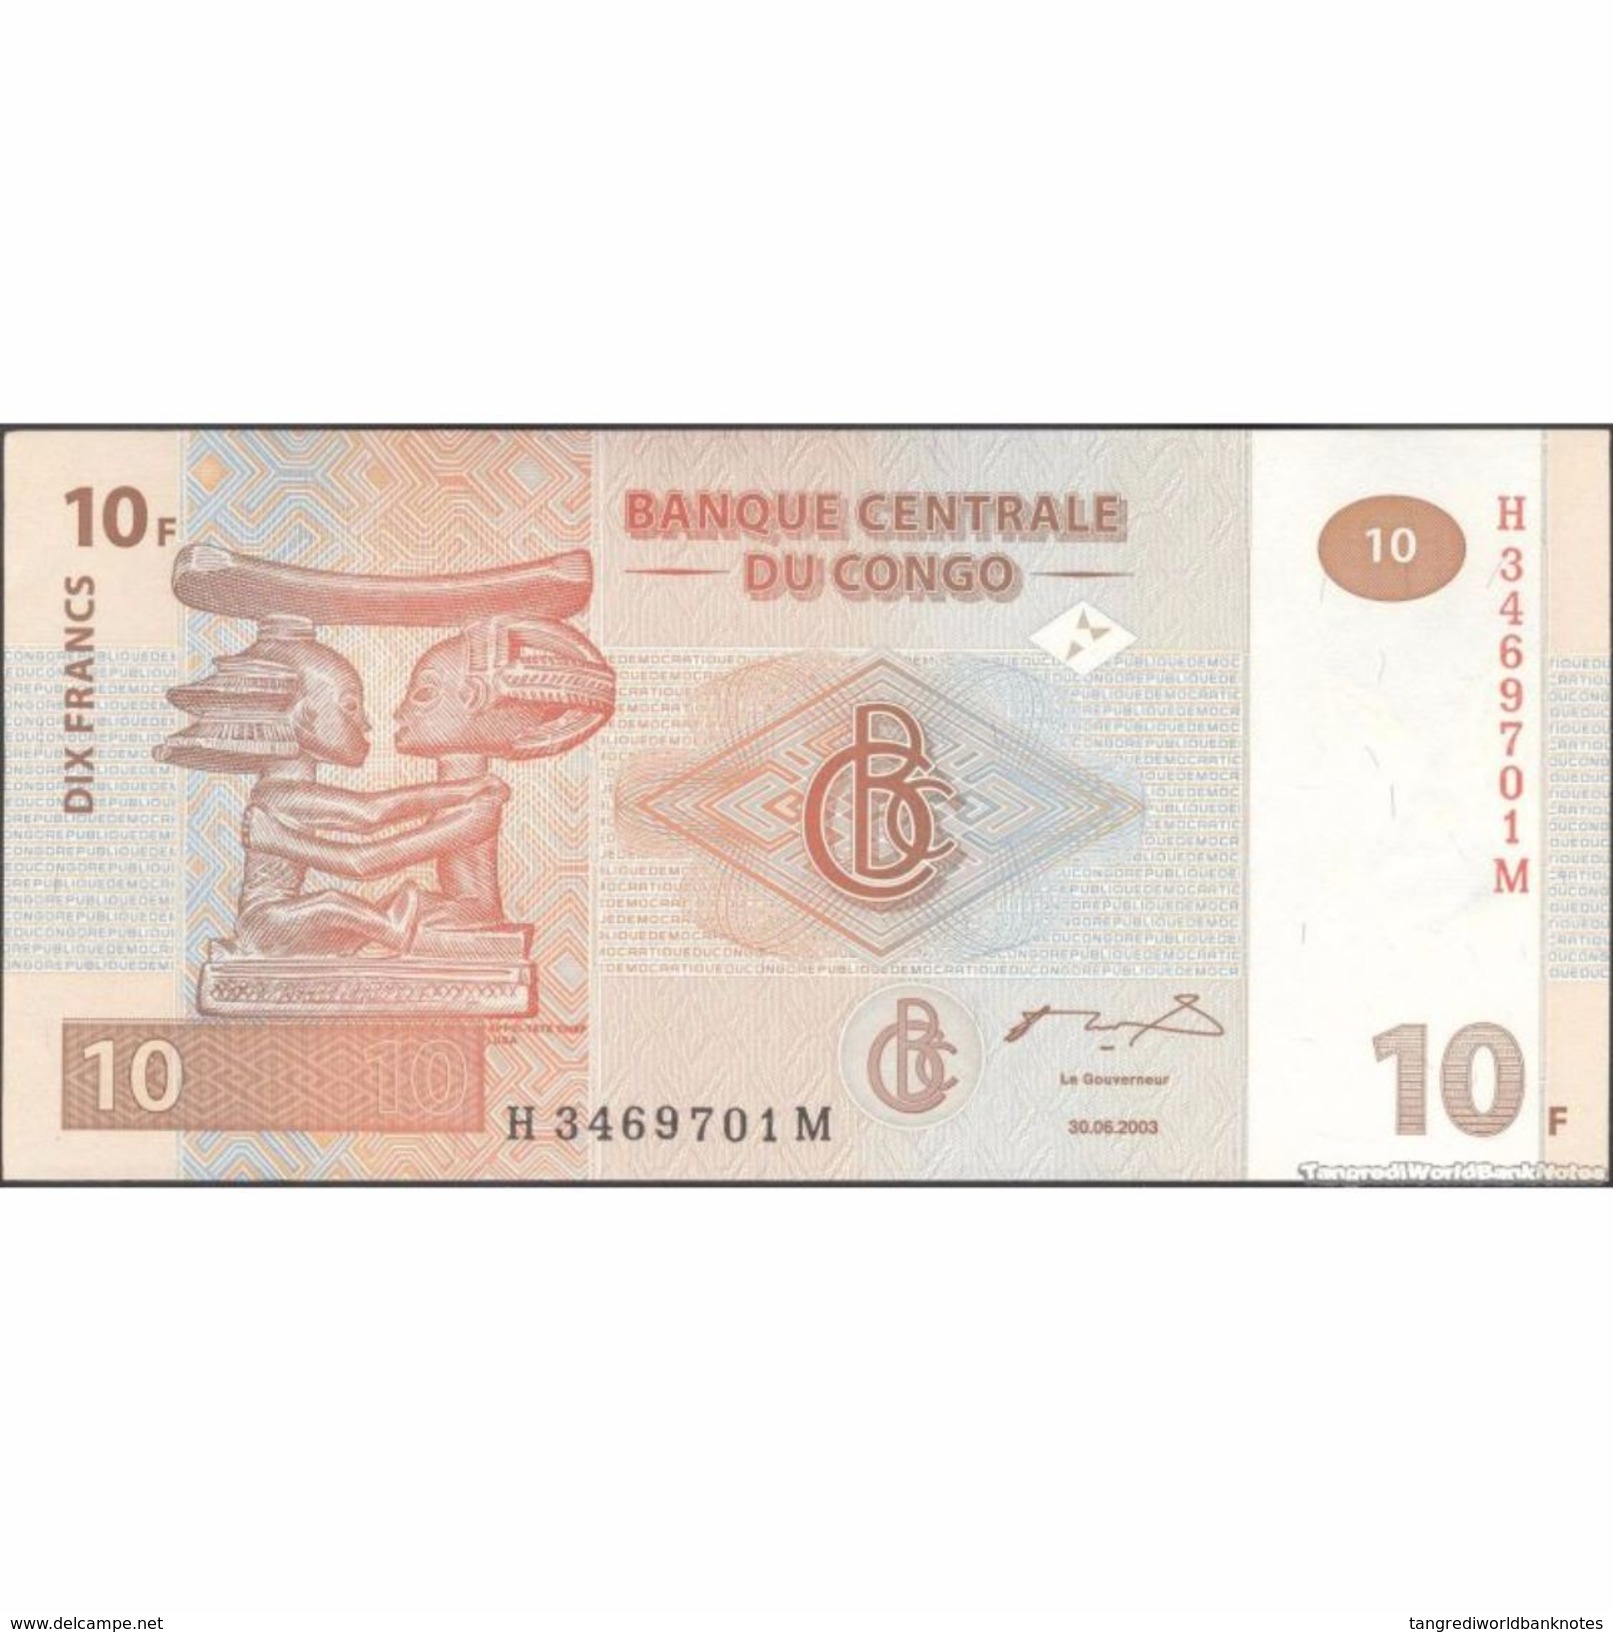 TWN - CONGO DEM. REP. 93a - 10 Francs 30.6.2003 H-M (G&D) UNC - Repubblica Democratica Del Congo & Zaire